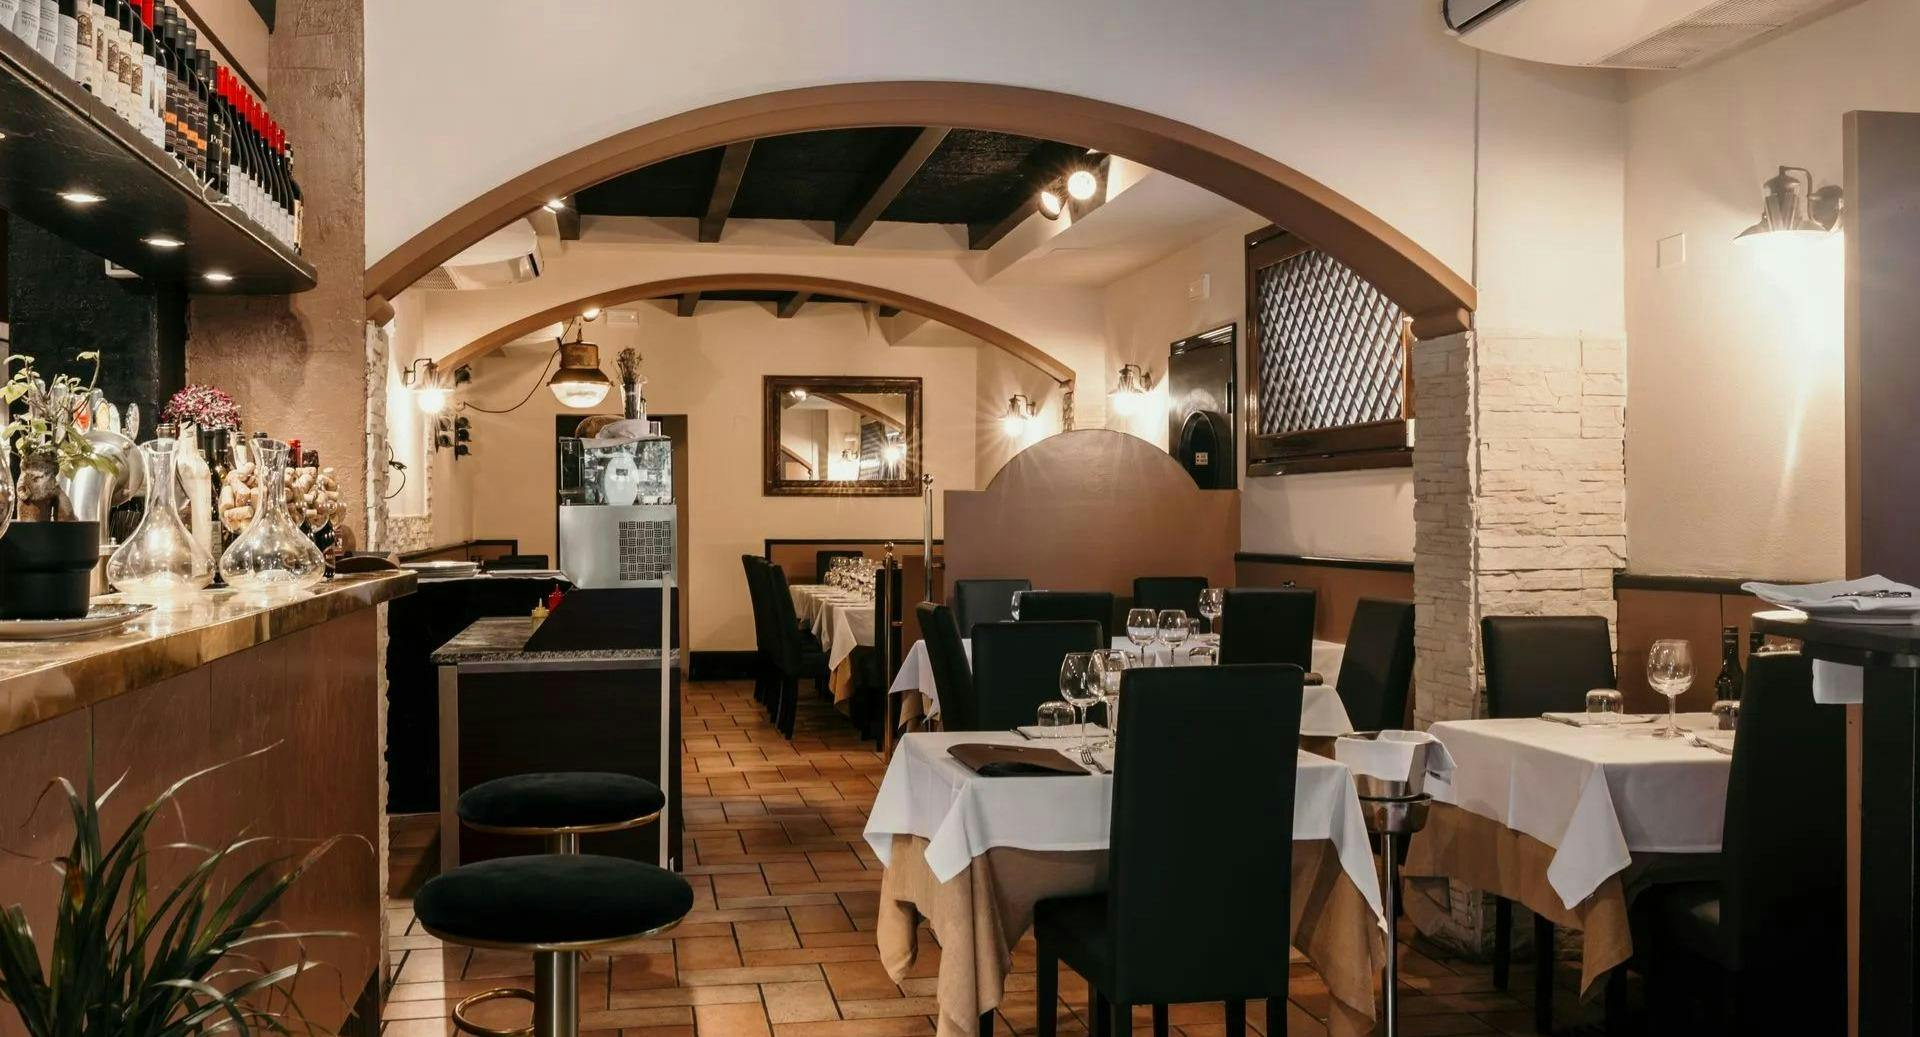 Photo of restaurant Bistrot San Mamolo in San Mamolo, Bologna